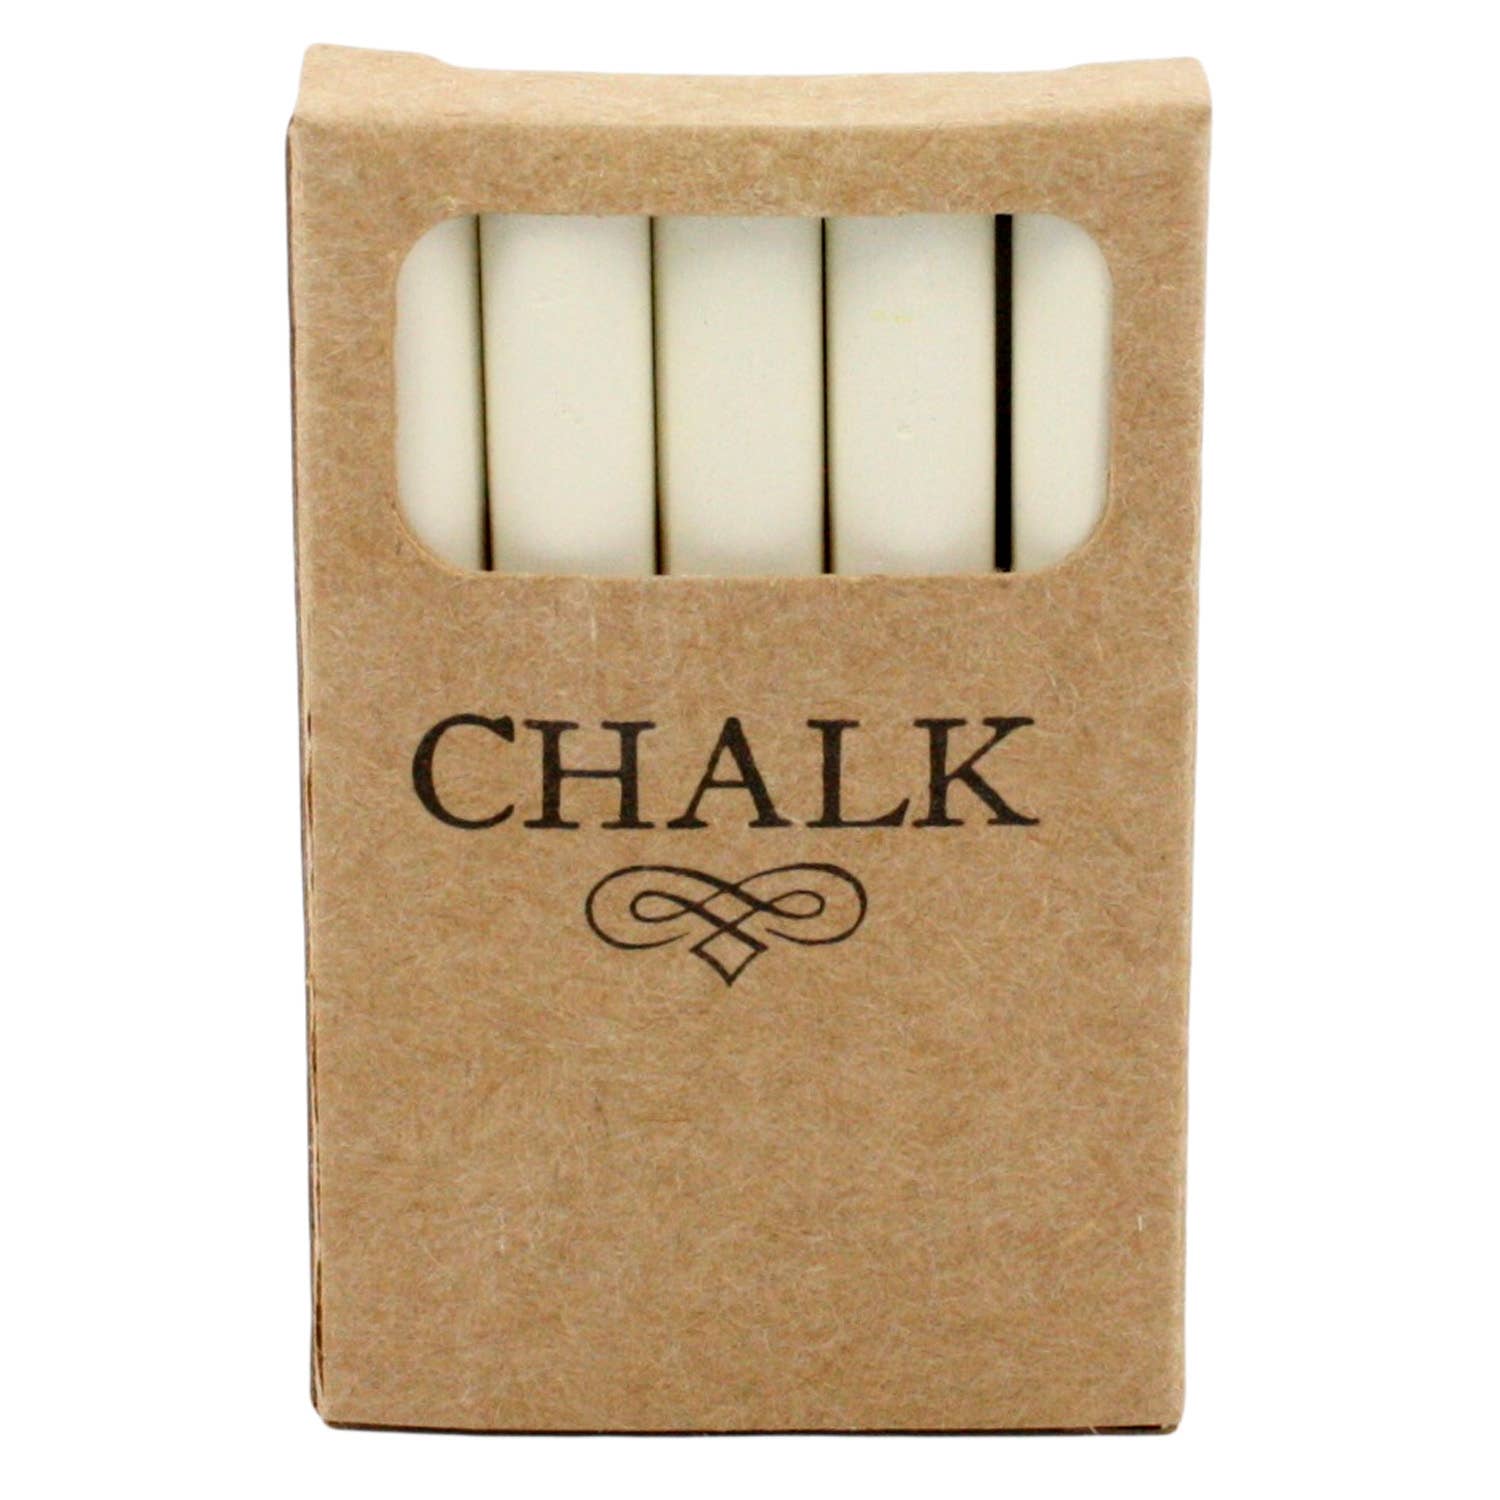 Box of Chalk - 5 Sticks - White